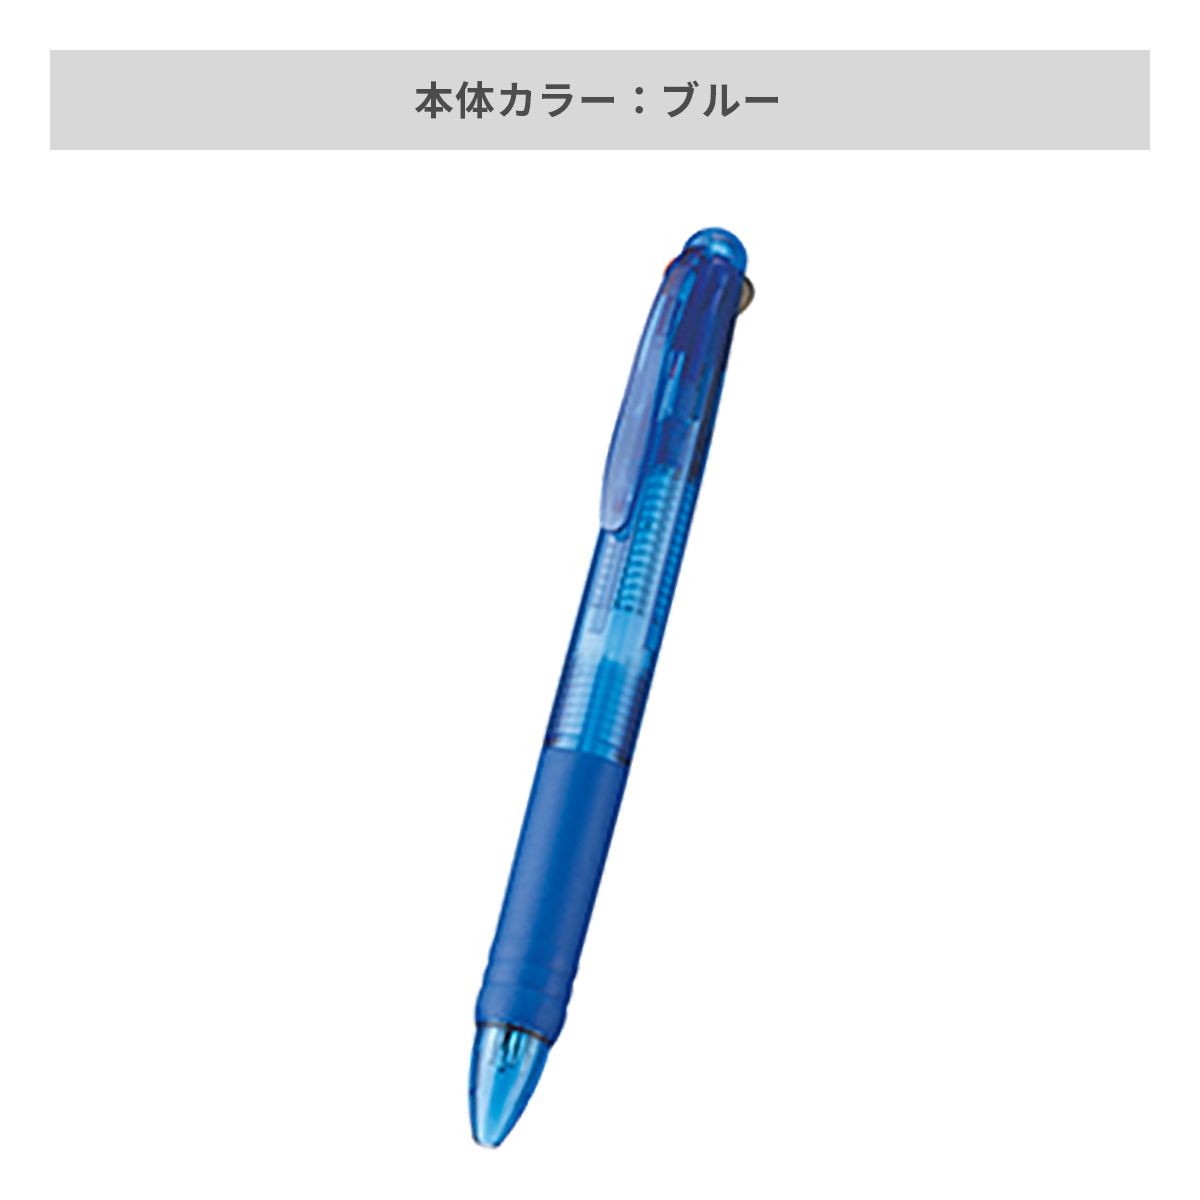 3色 プラスワン ボールペン【名入れボールペン / インクジェット印刷】 画像3